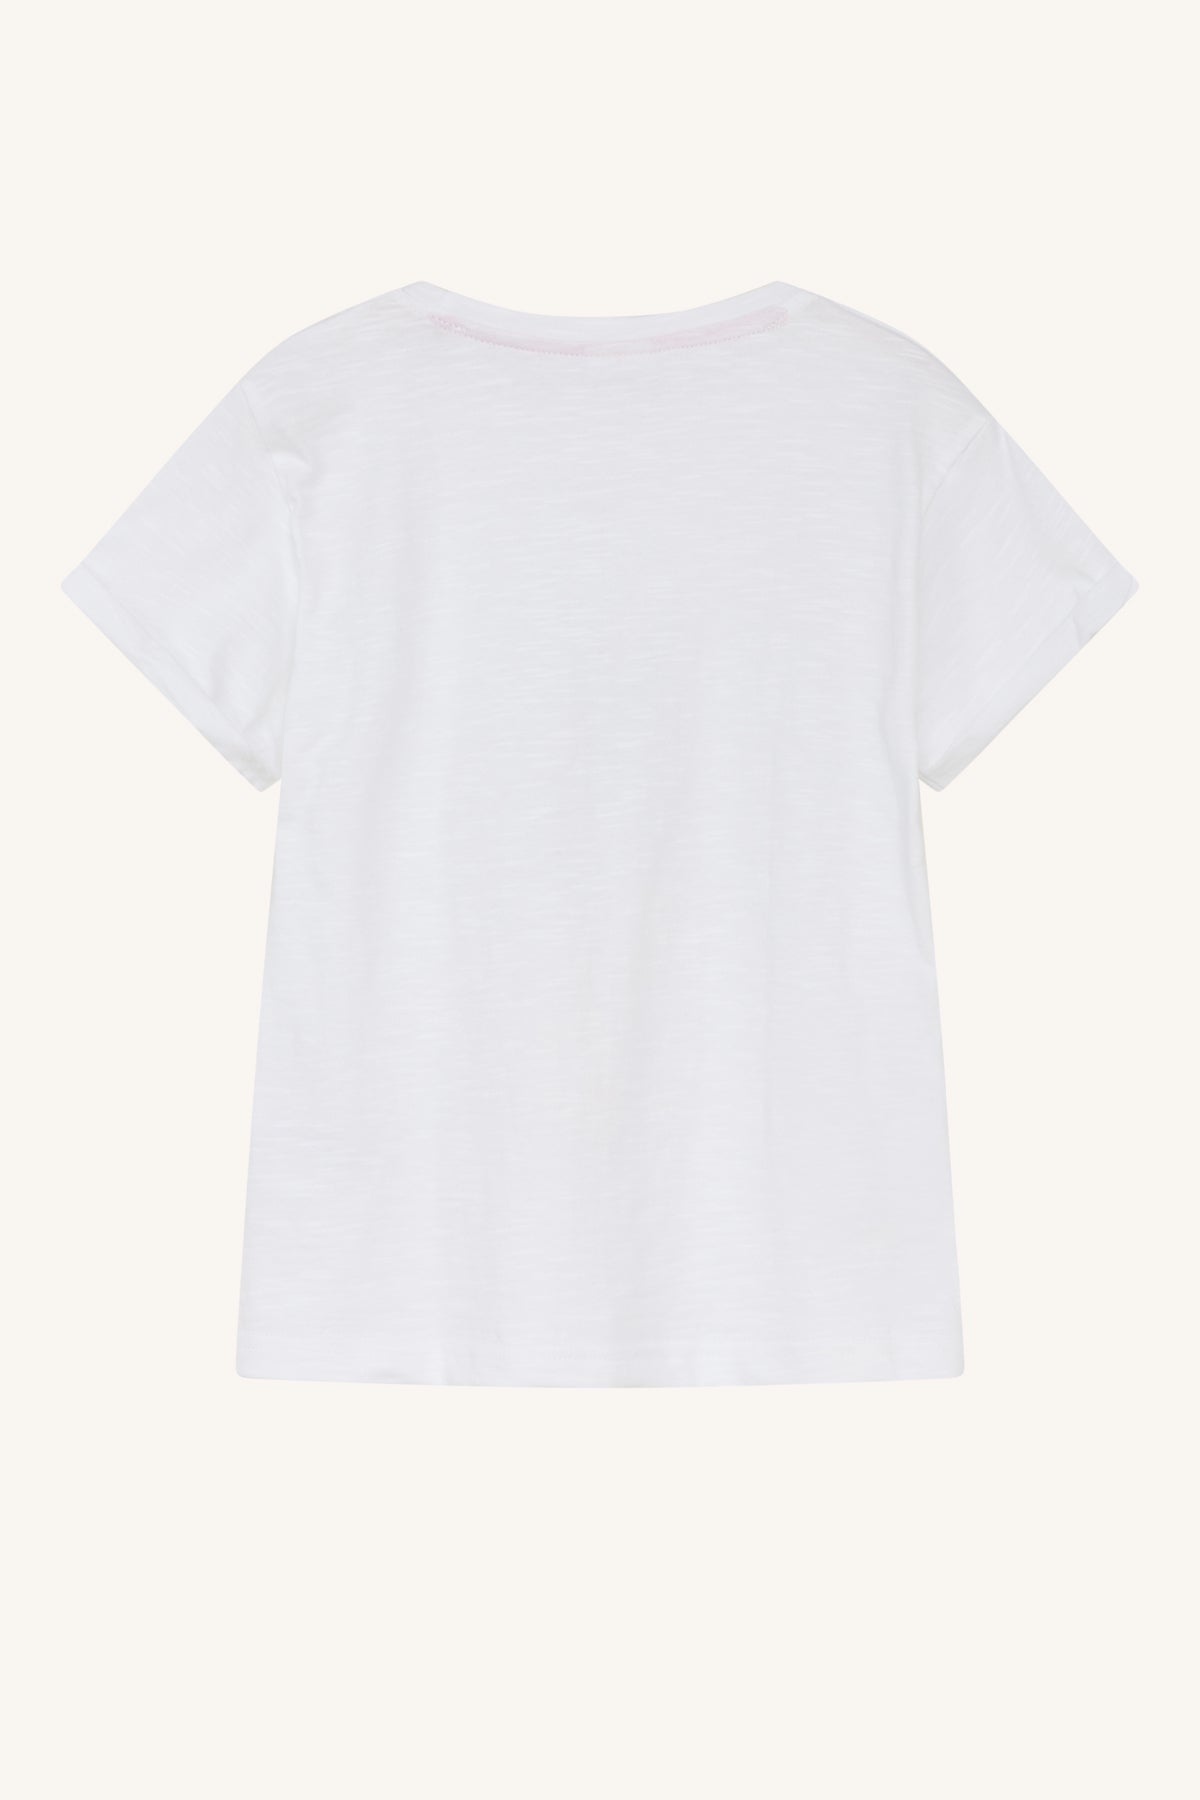 Abarna-HC - T-shirt